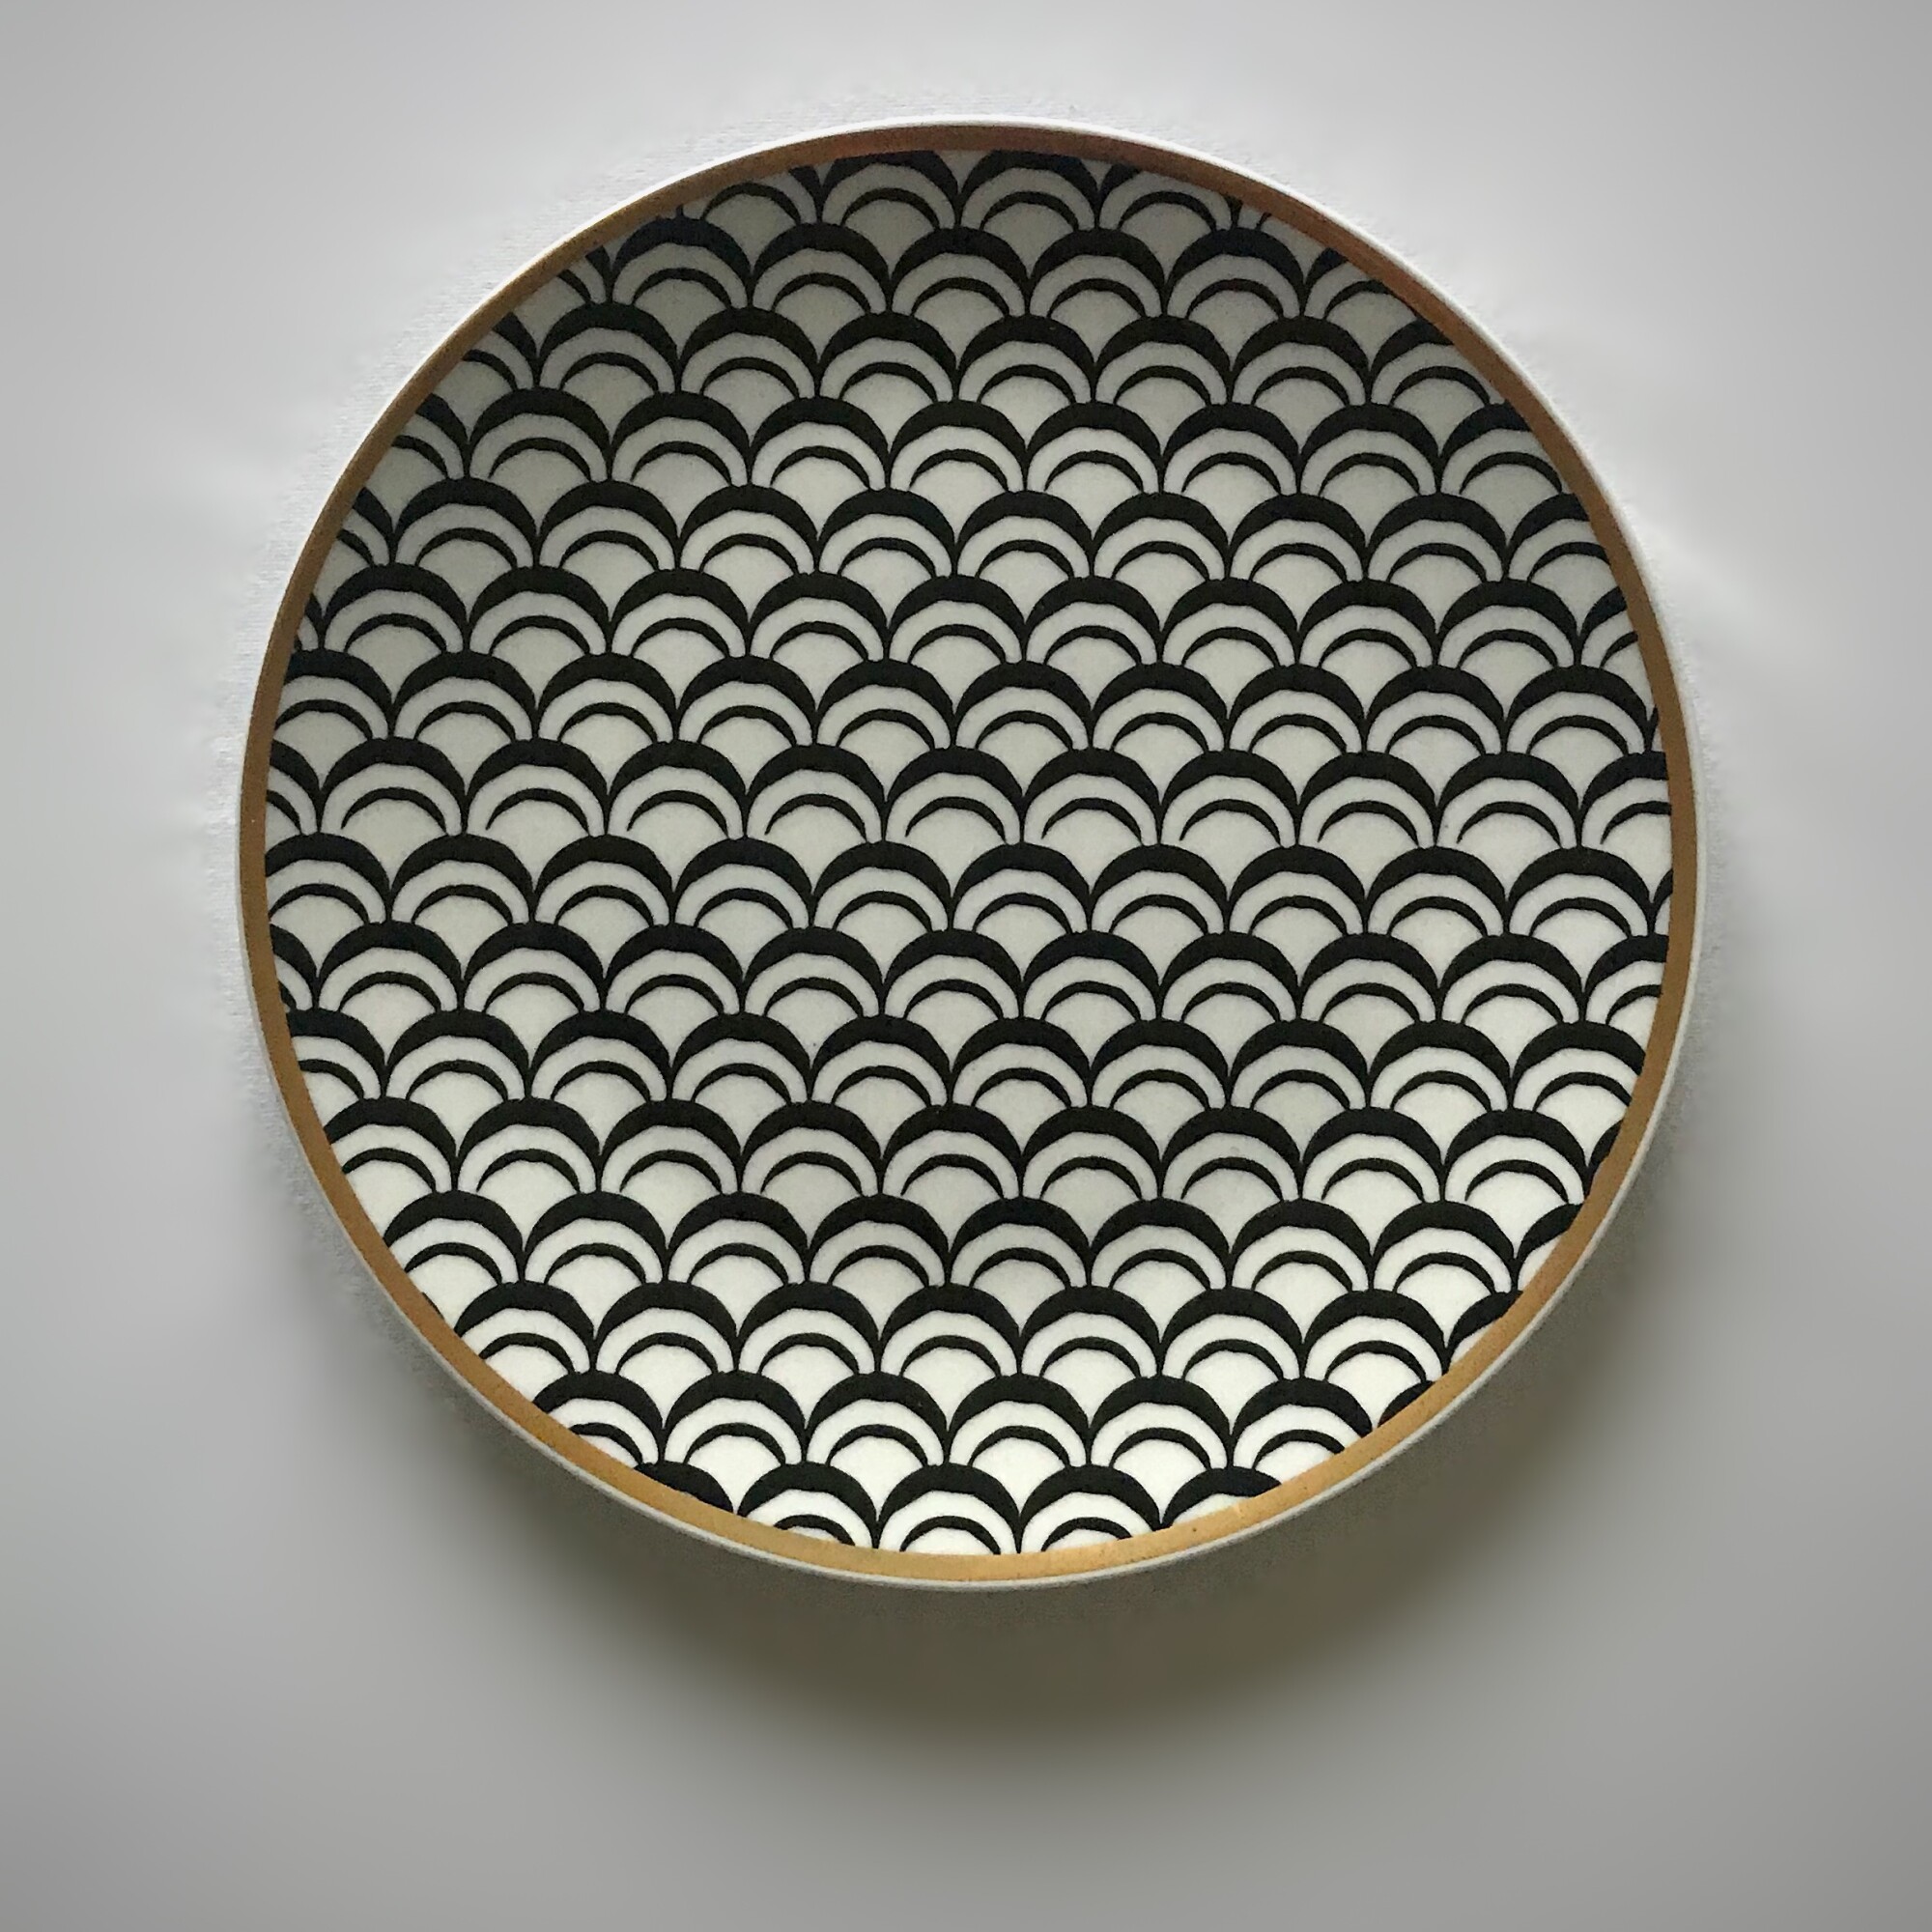 Тарелка "Волны" из коллекции "Геометрия" (27 см)